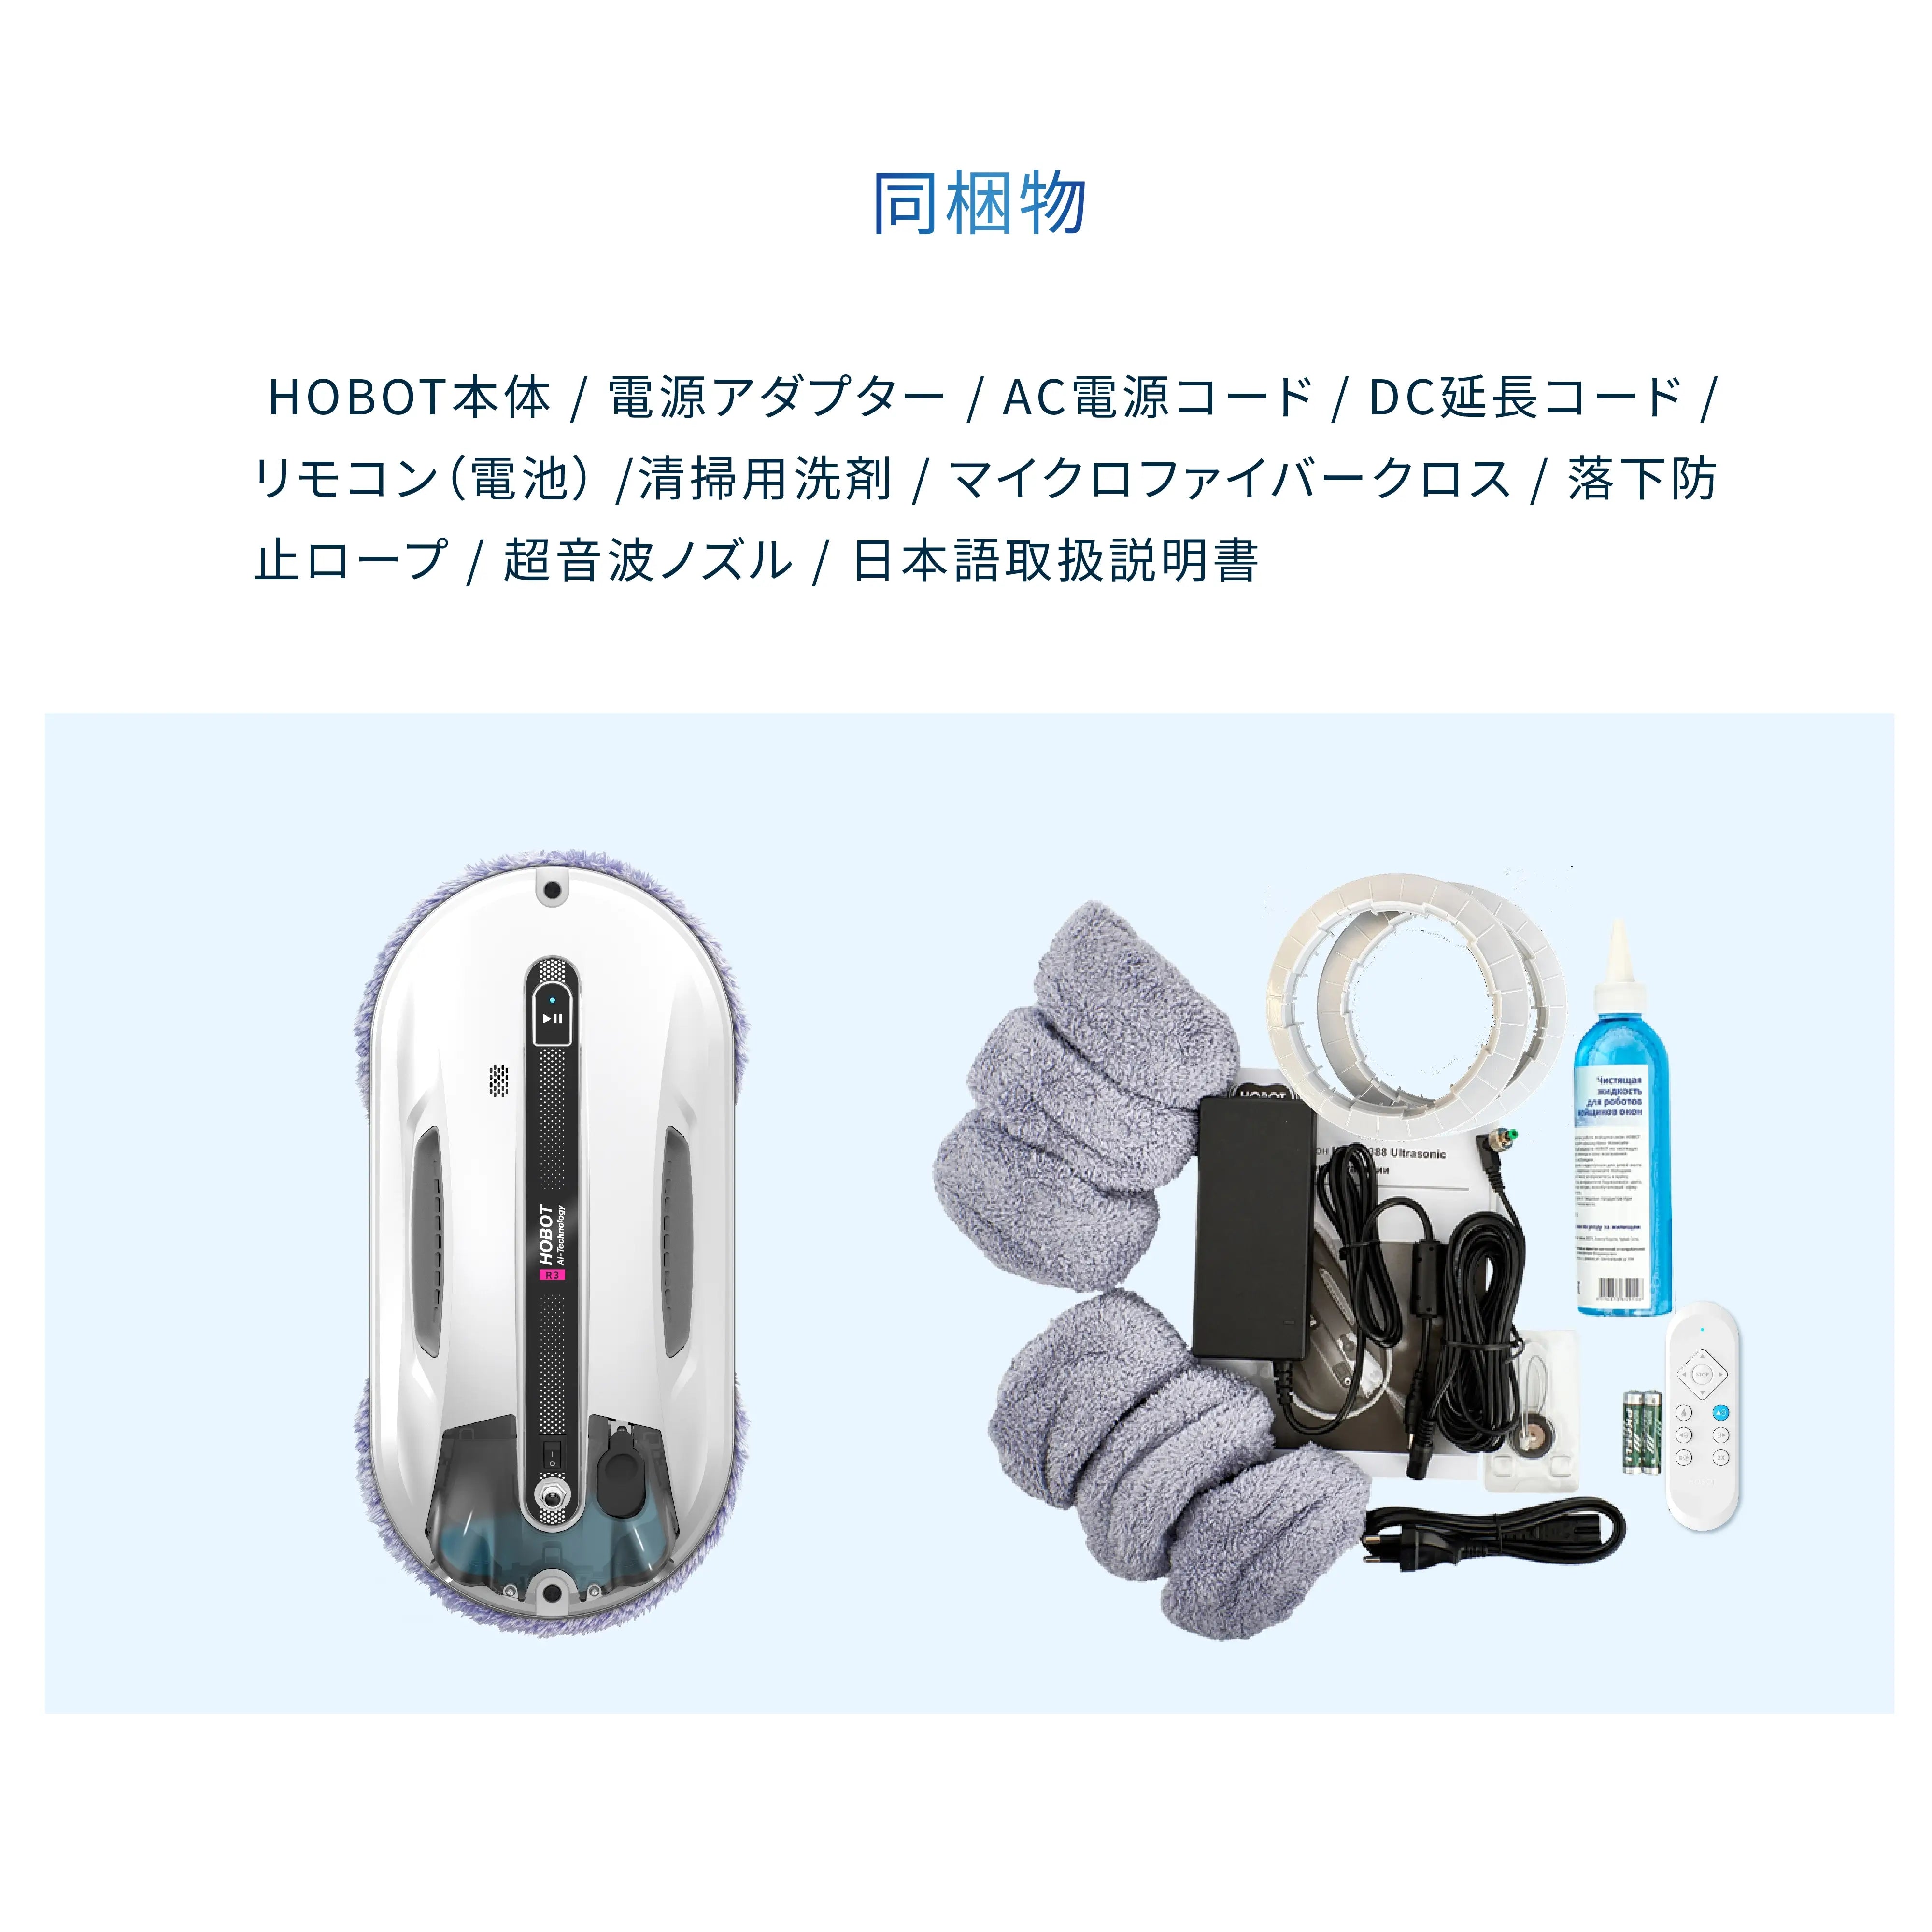 54800円彡新品彡【全自動の窓そうじ】 HOBOT-R3（ホボット） 窓拭き